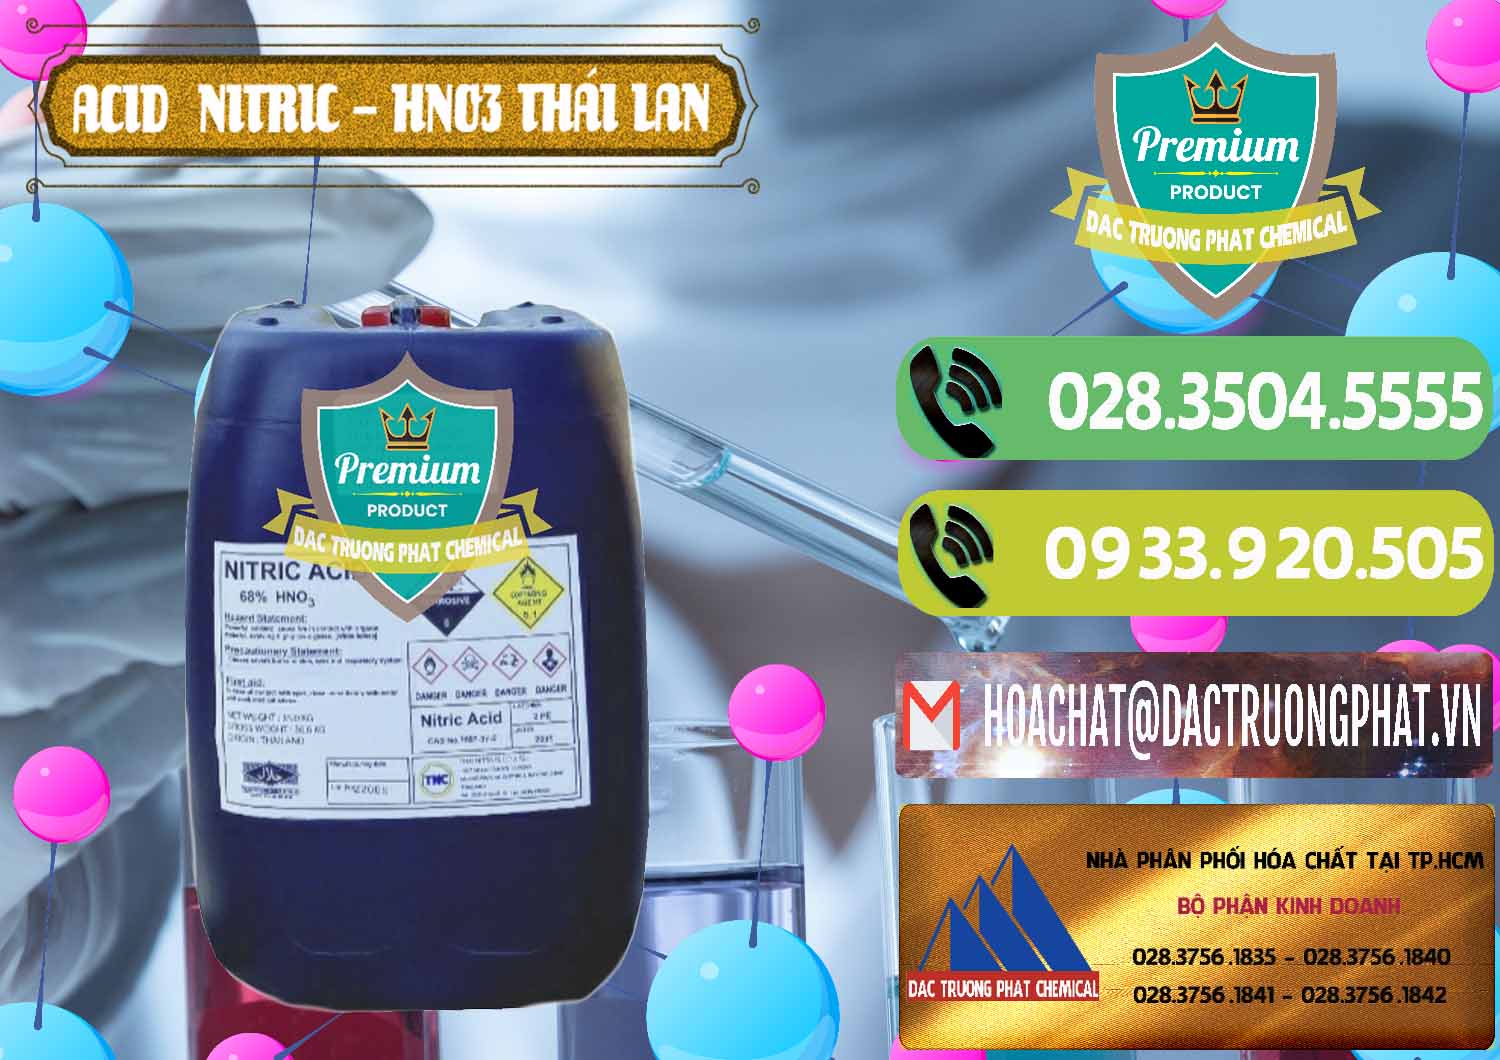 Cty chuyên kinh doanh ( bán ) Acid Nitric – Axit Nitric HNO3 Thái Lan Thailand - 0344 - Đơn vị chuyên cung cấp - kinh doanh hóa chất tại TP.HCM - hoachatmientay.vn